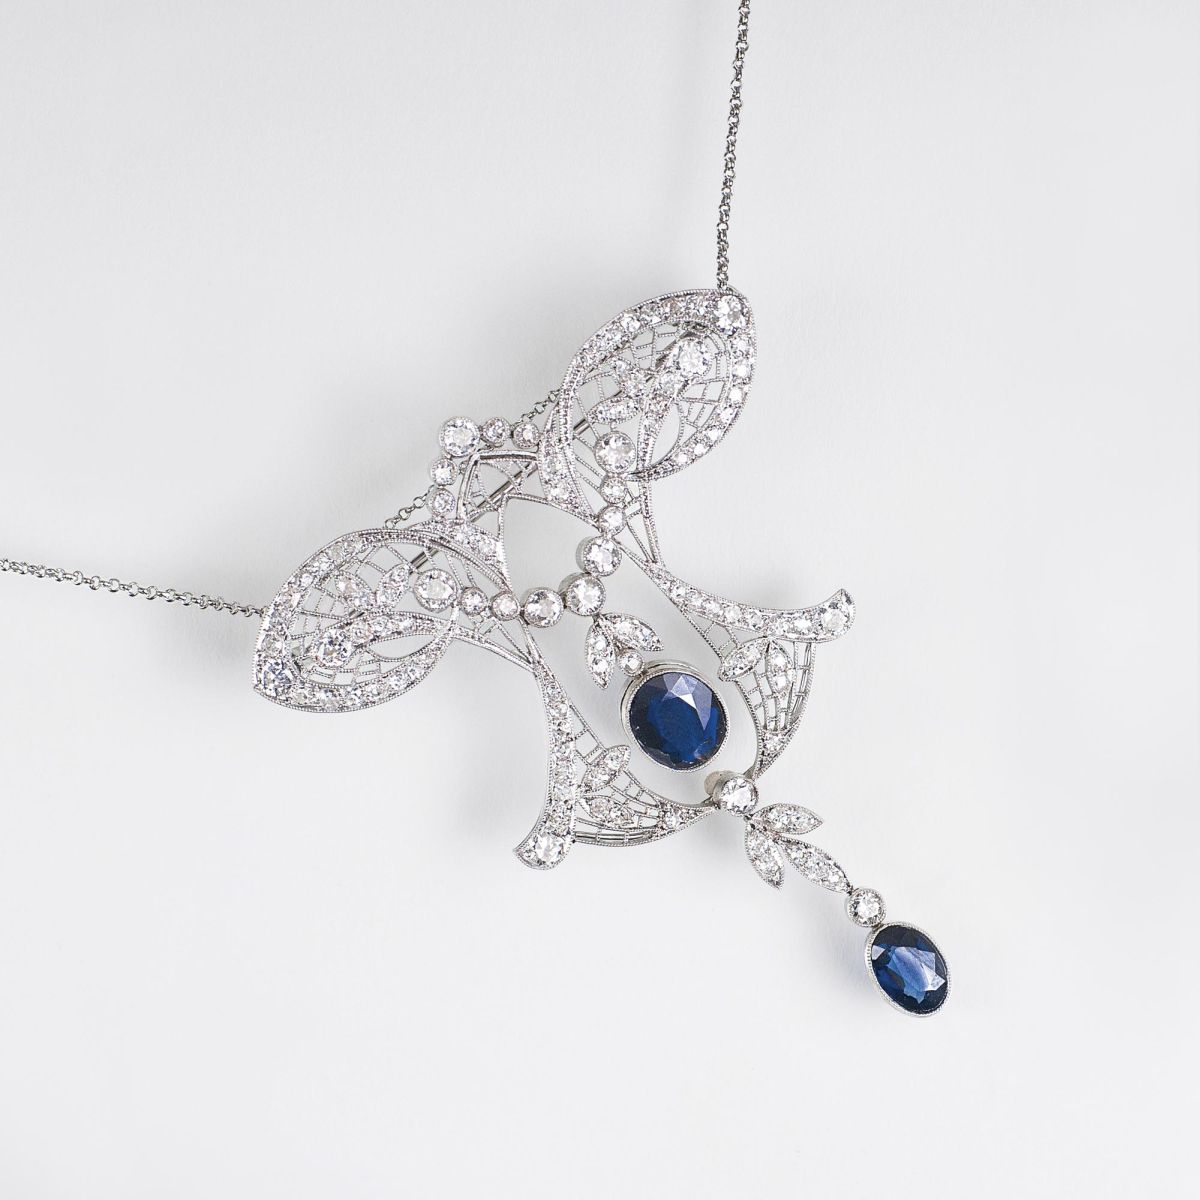 A fine Art Nouveau Diamond Necklace with sapphires